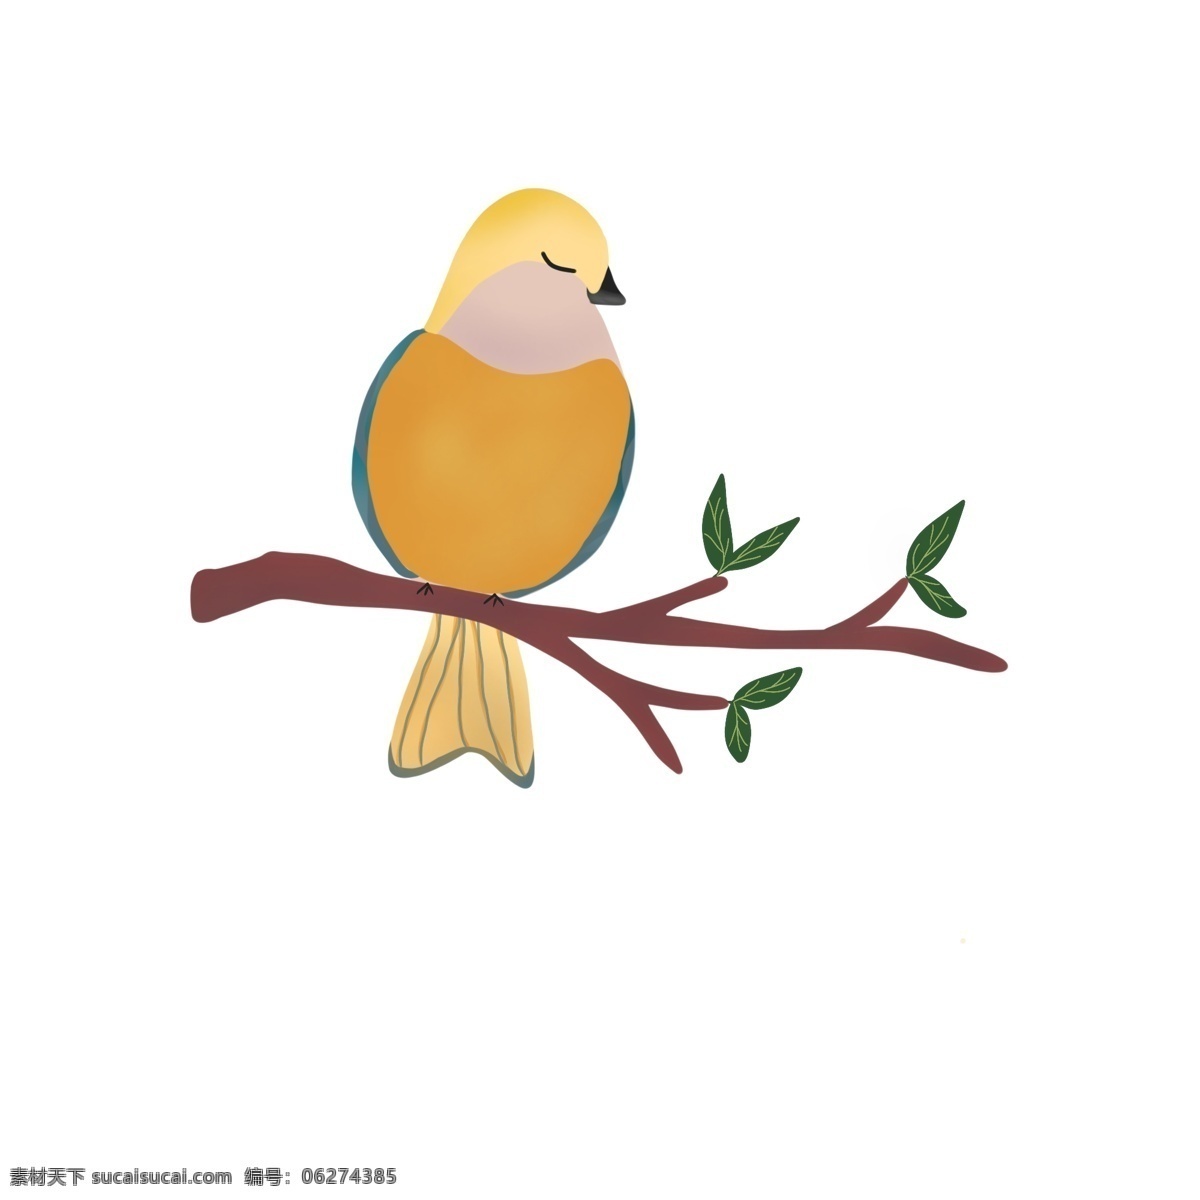 国际 爱鸟 日 小鸟 树枝 休憩 扁平 鸟 元素 装饰 图案 国际爱鸟日 鸟元素 装饰图案 橙色 黄色 绿色 鲜亮